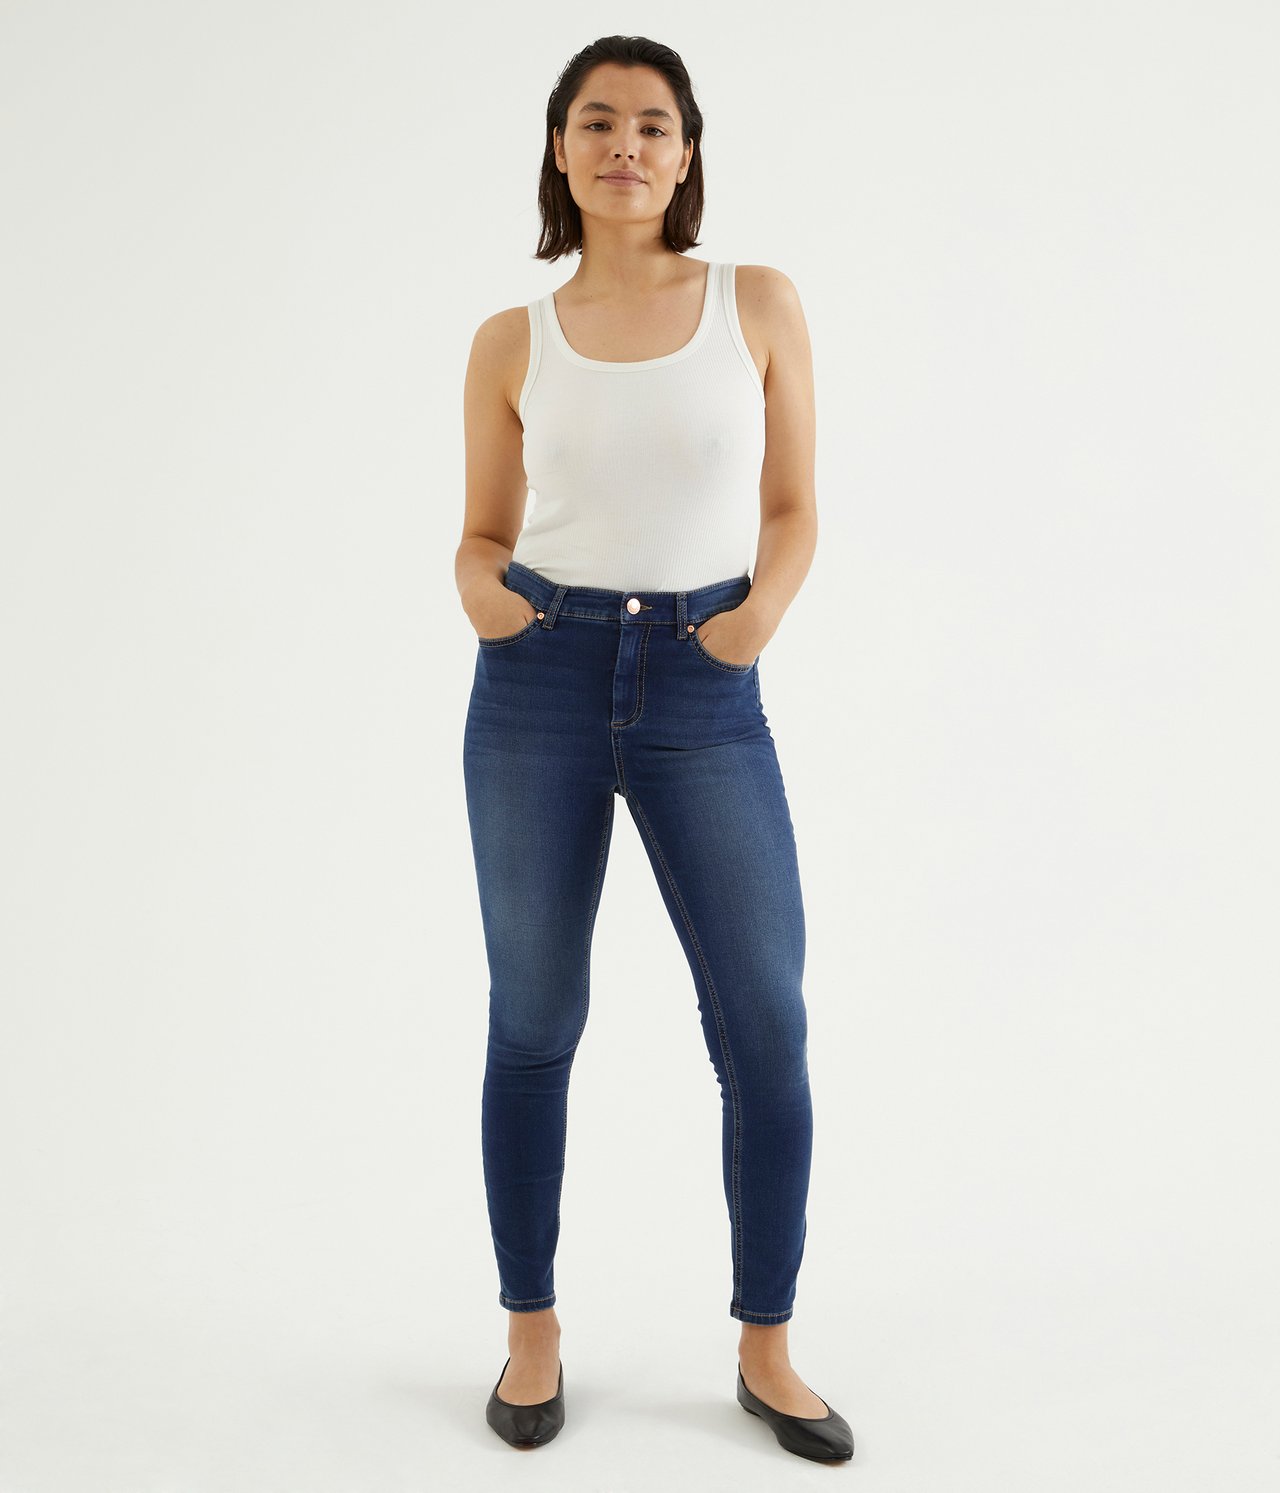 Super slim jeans short leg Mörk denim - null - 0